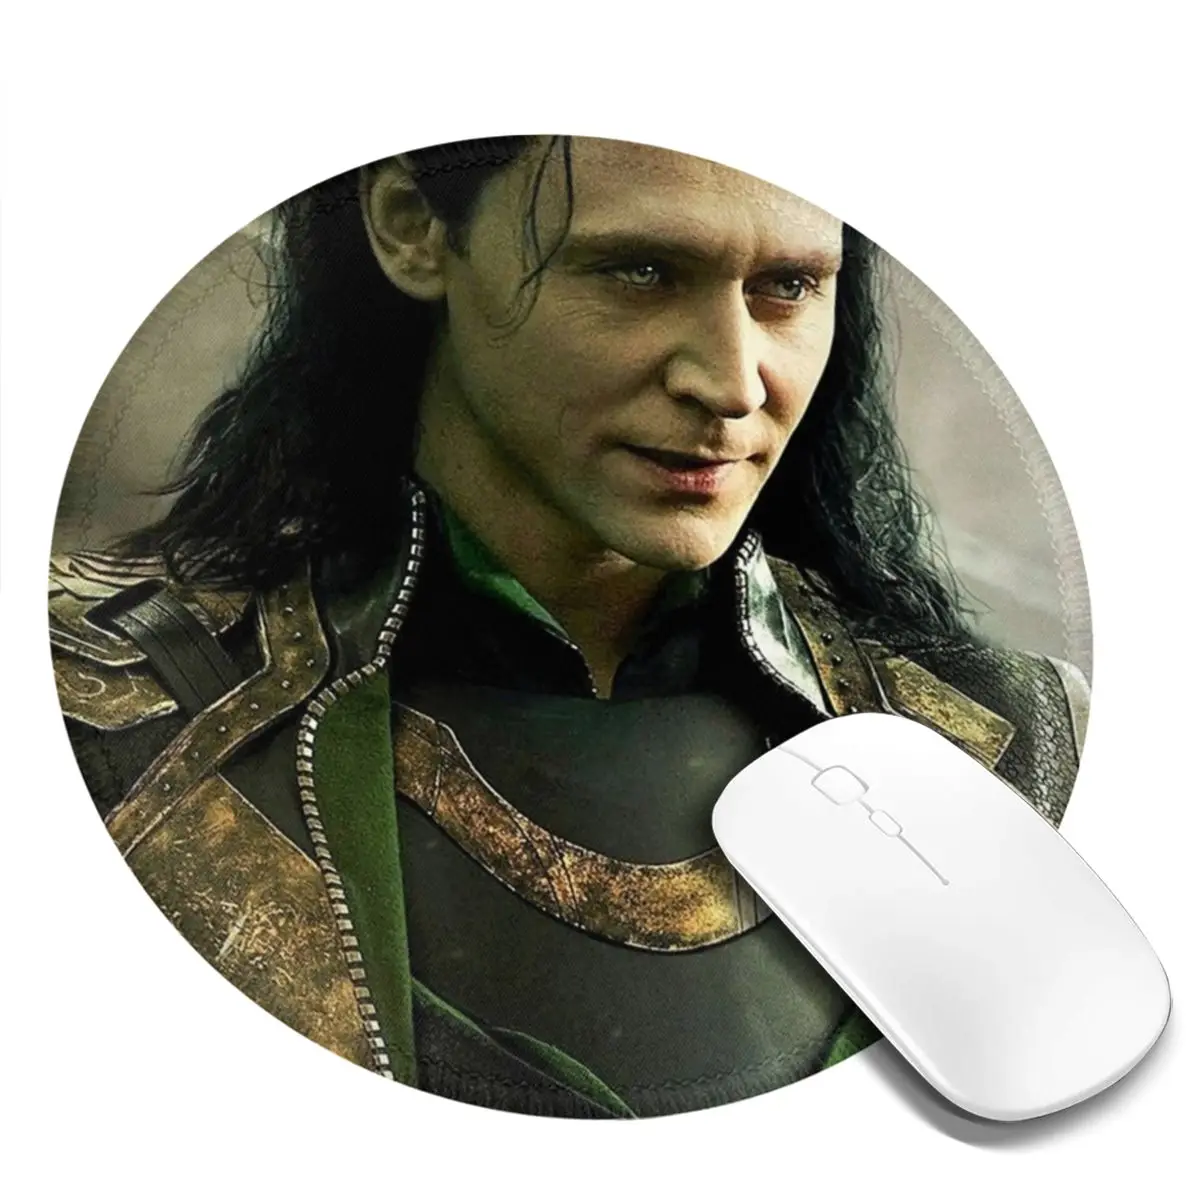 

Коврик для мыши Tom Hiddleston, резиновый простой подлокотник для компьютерной мыши, с рисунком из фильма